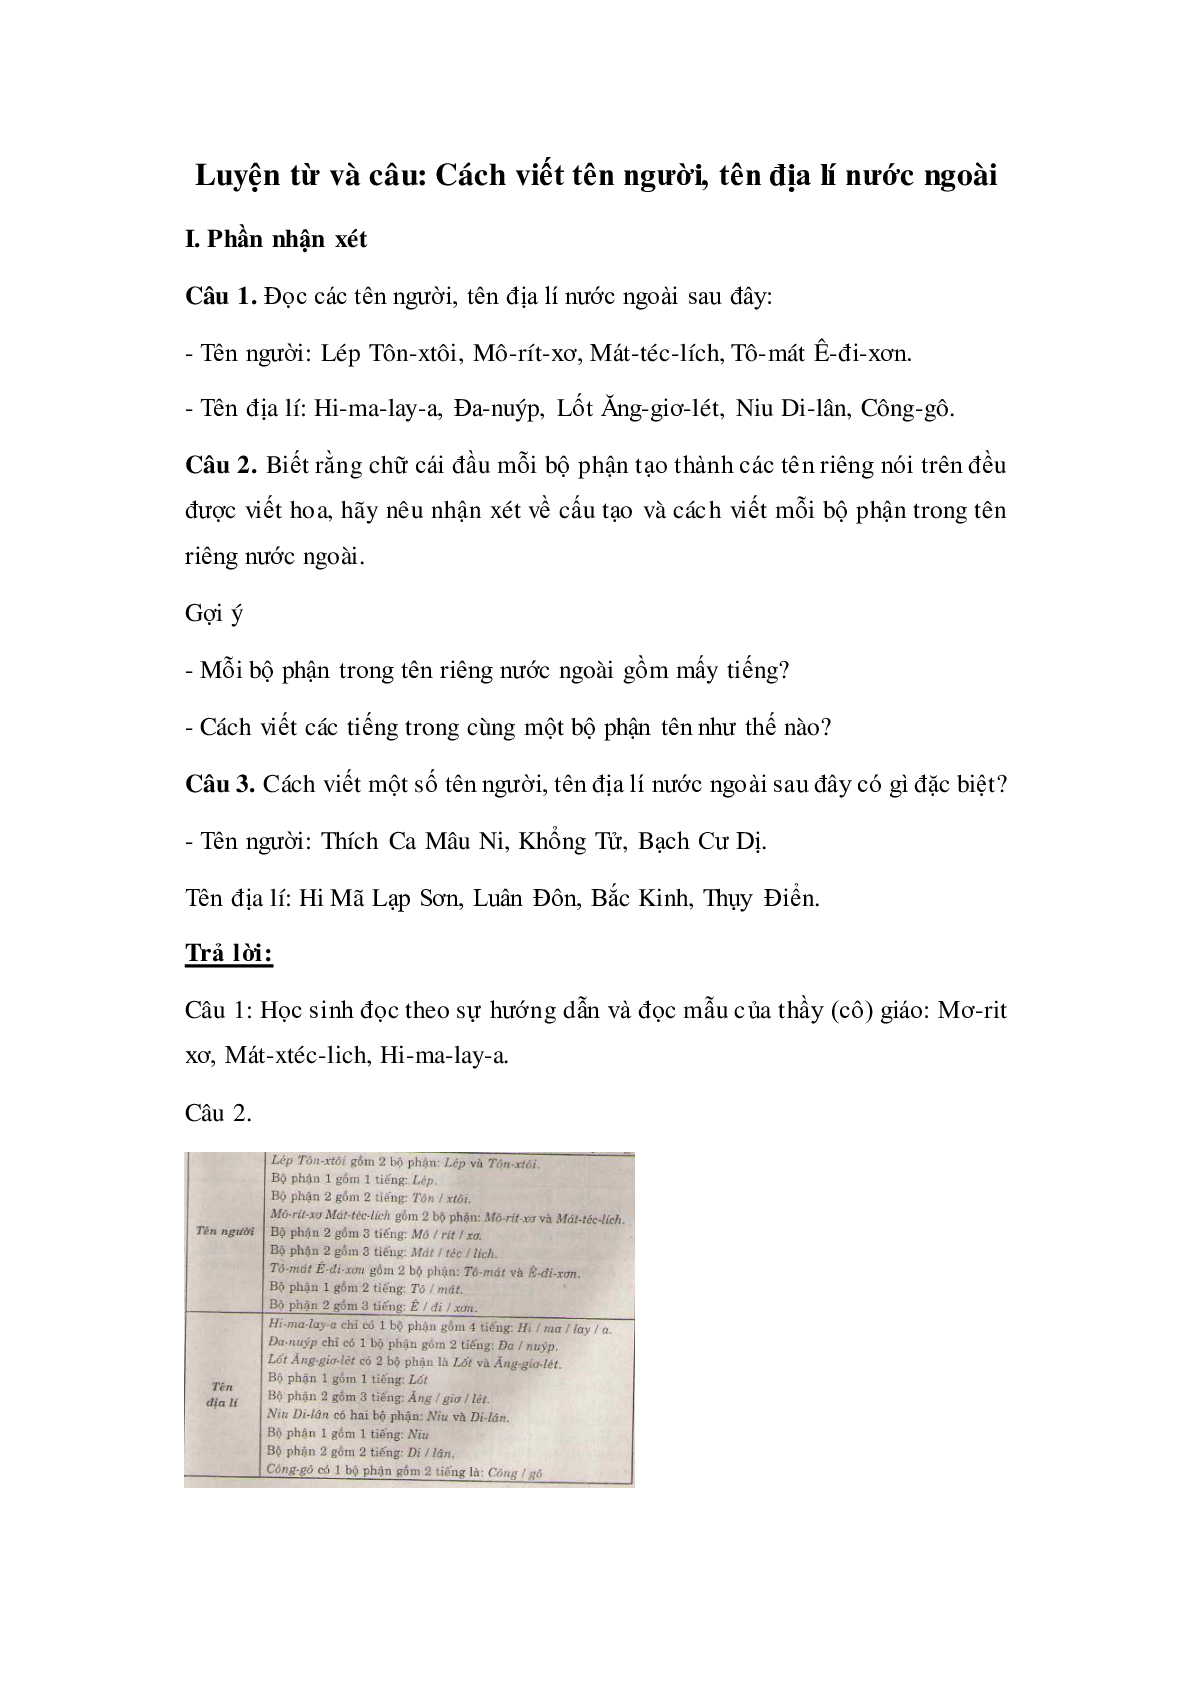 Soạn Tiếng Việt lớp 4: Luyện từ và câu: Cách viết tên người, tên địa lí nước ngoài mới nhất (trang 1)